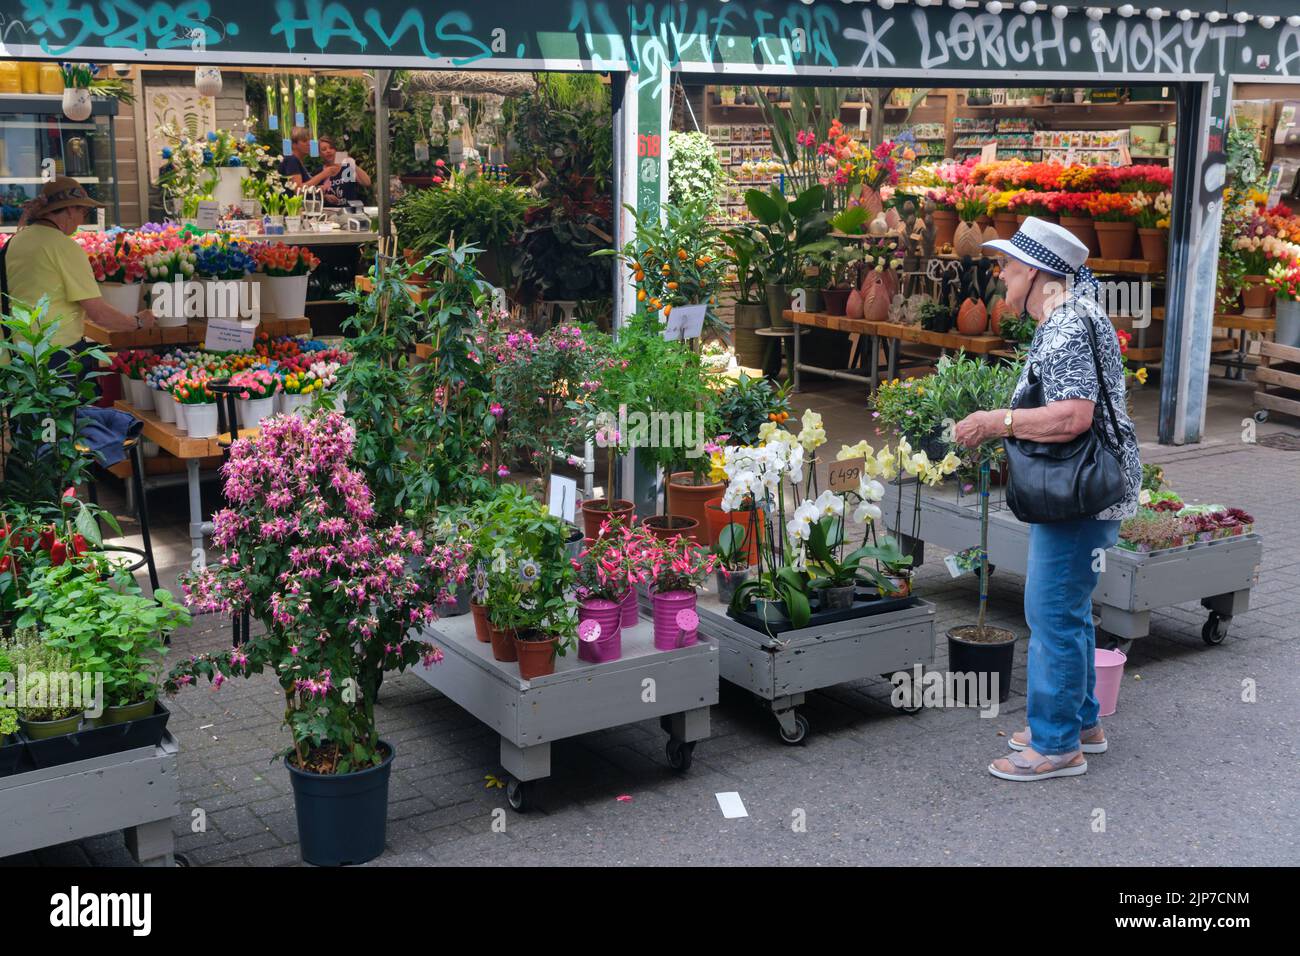 Ámsterdam, Países Bajos - 21 de junio de 2022: El emblemático Mercado flotante de las Flores de Ámsterdam se inauguró en 1862 Foto de stock